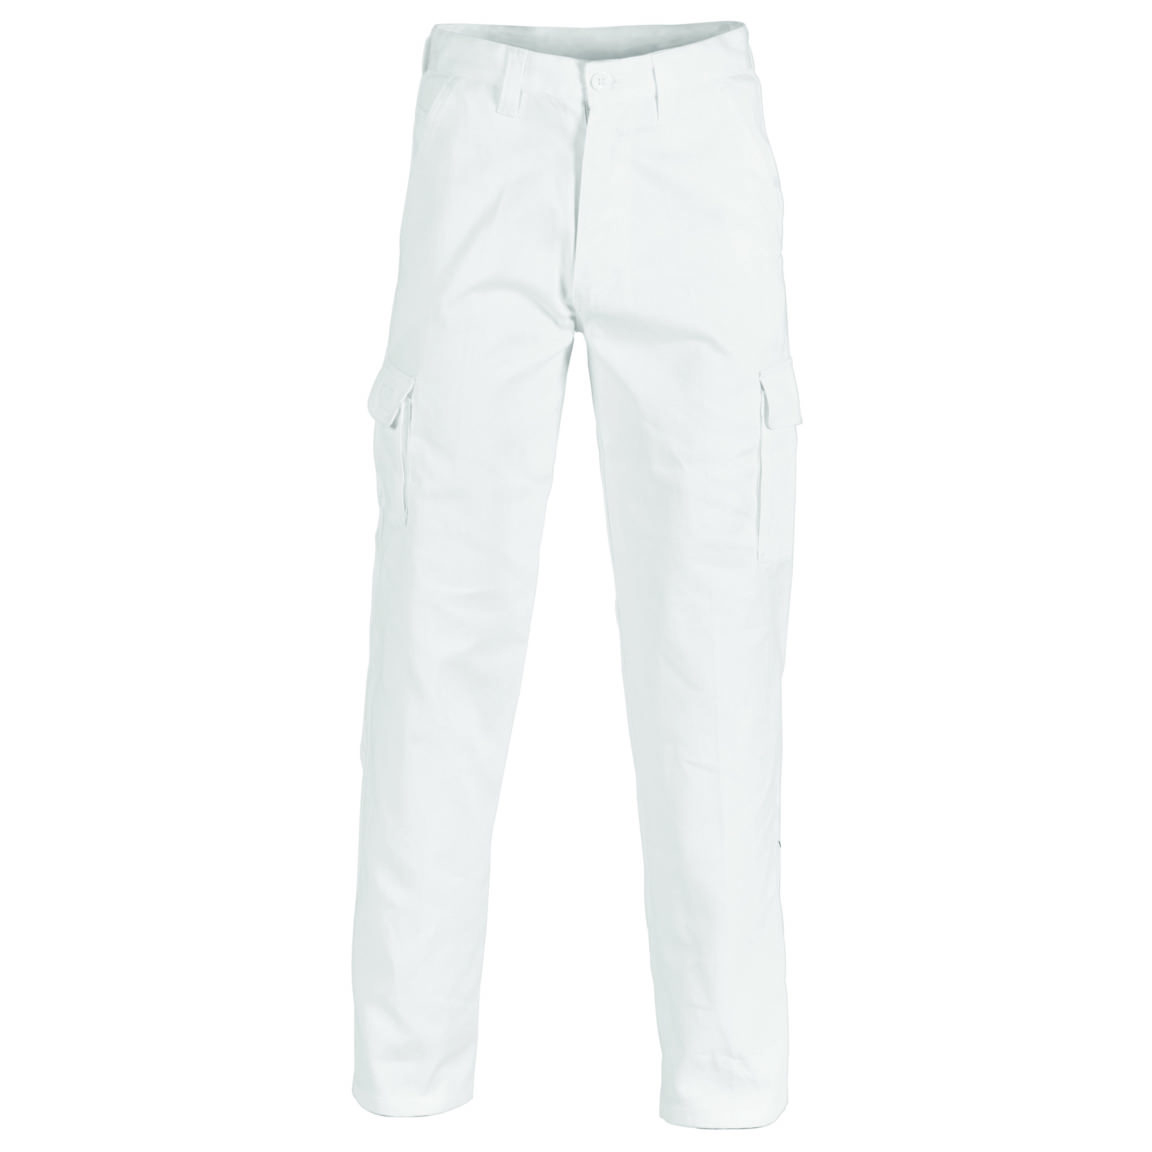 DNC 3312 Cotton Cargo Pant - West Coast Uniforms